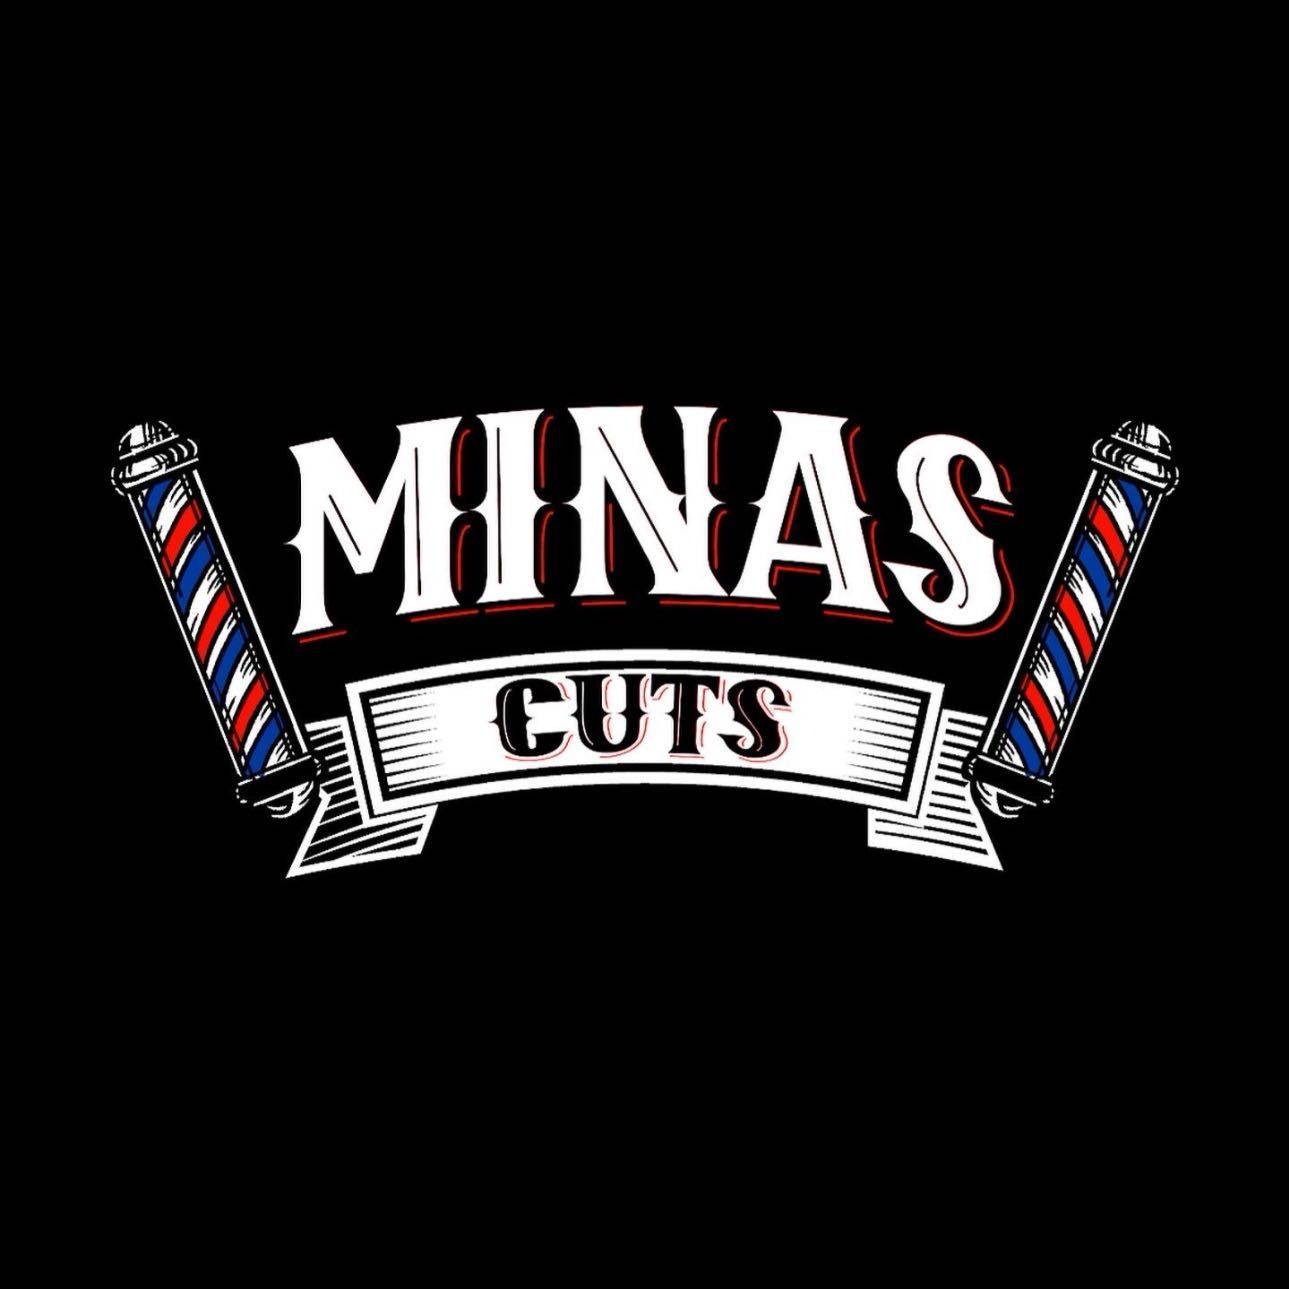 Minas cuts, 2246 E Harvard St, Phoenix, 85006